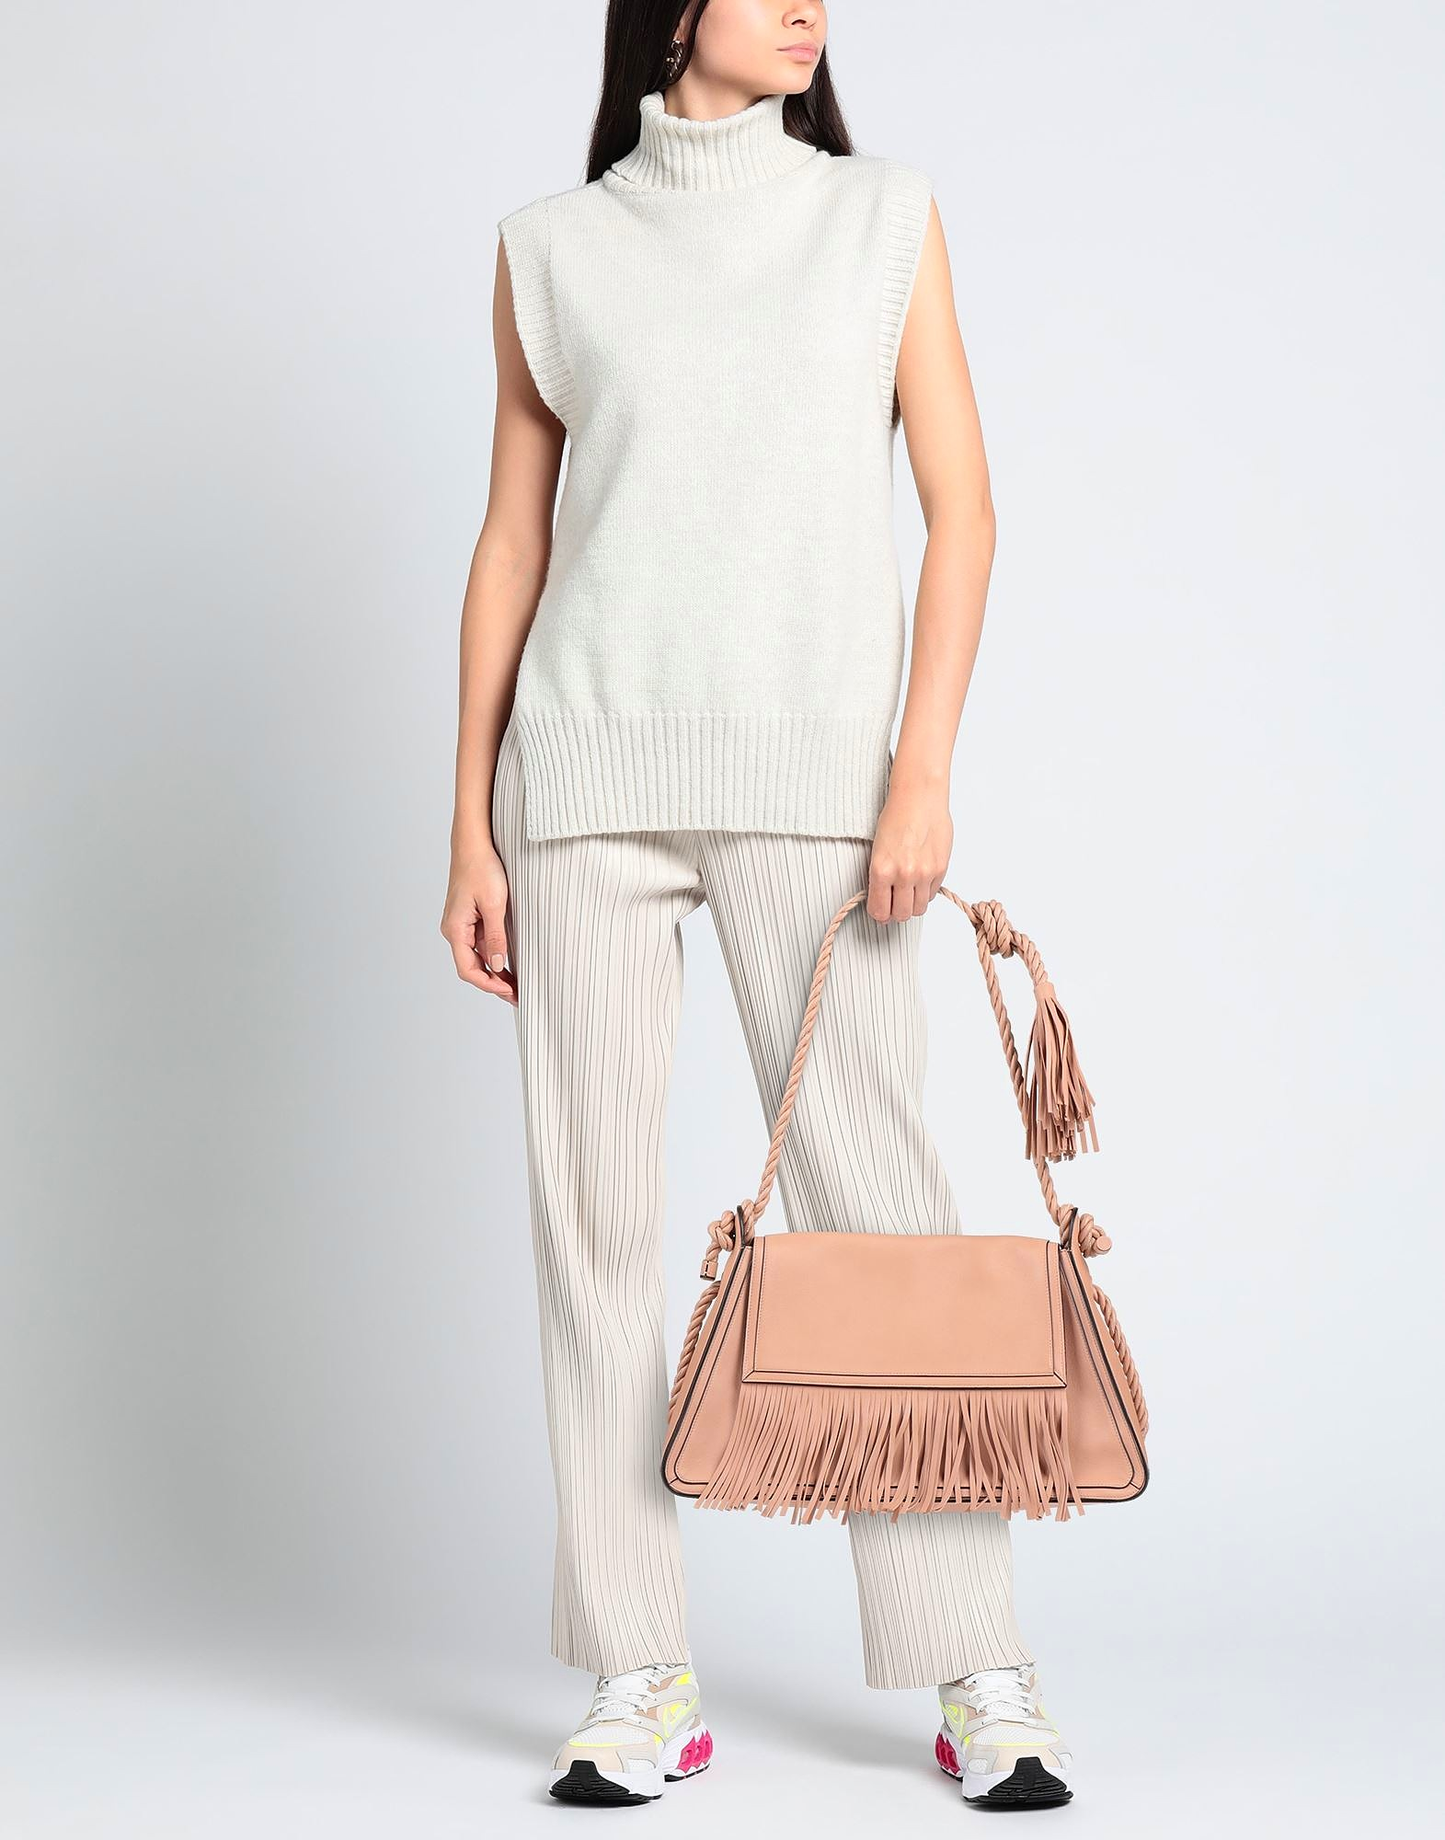 PARIOLI BAGS - Discount Designer Handbags Outlet | VALENTINO GARAVANI Handbags